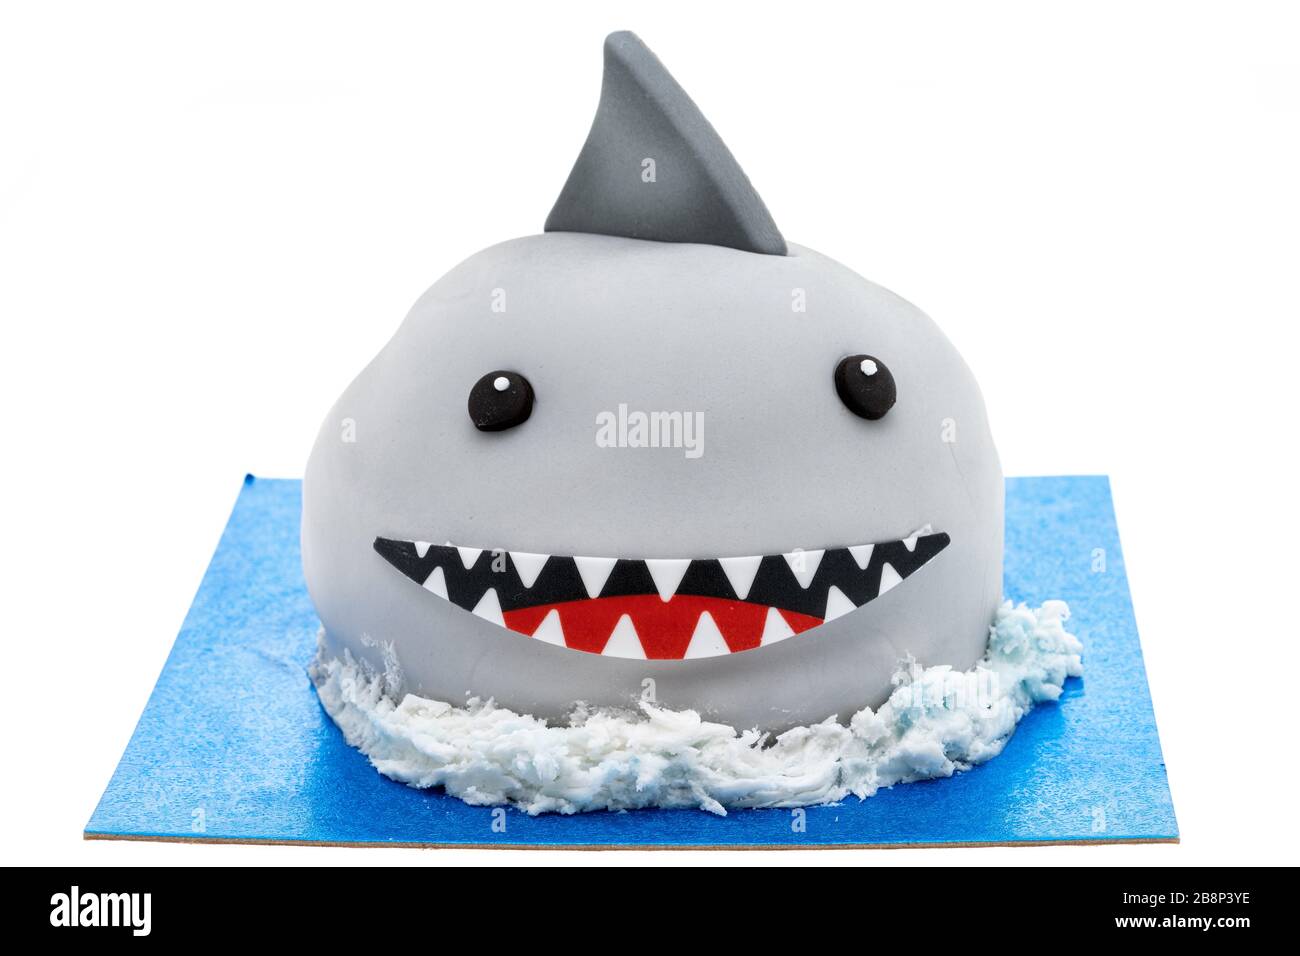 Un gâteau aux requins pour enfants - fond blanc Banque D'Images